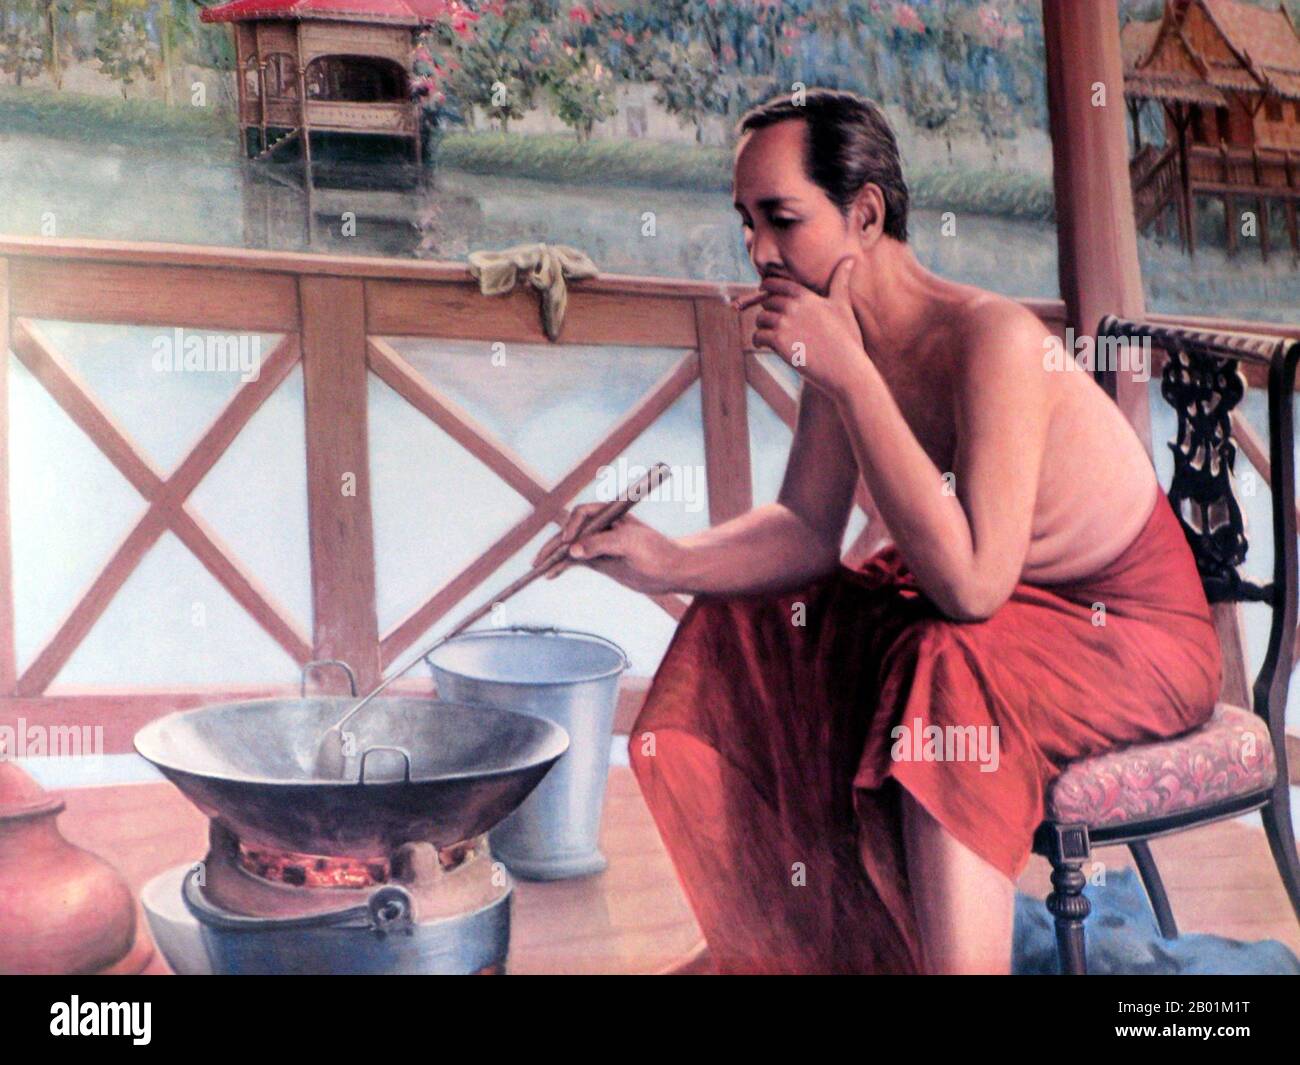 Thaïlande : Roi Rama V, Chulalongkorn (20 septembre 1853 - 23 octobre 1910), 5e monarque de la dynastie Chakri, en tenue informelle. Peinture à l'huile sur toile, début du 20e siècle. Phra Bat Somdet Phra Poramintharamaha Chulalongkorn Phra Chunla Chom Klao Chao Yu Hua, ou Rama V était le cinquième monarque du Siam sous la Maison des Chakri. Il est considéré comme l'un des plus grands rois du Siam. Son règne est caractérisé par la modernisation du Siam, d'immenses réformes gouvernementales et sociales, et des cessions territoriales à l'Empire britannique et à l'Indochine française. Banque D'Images